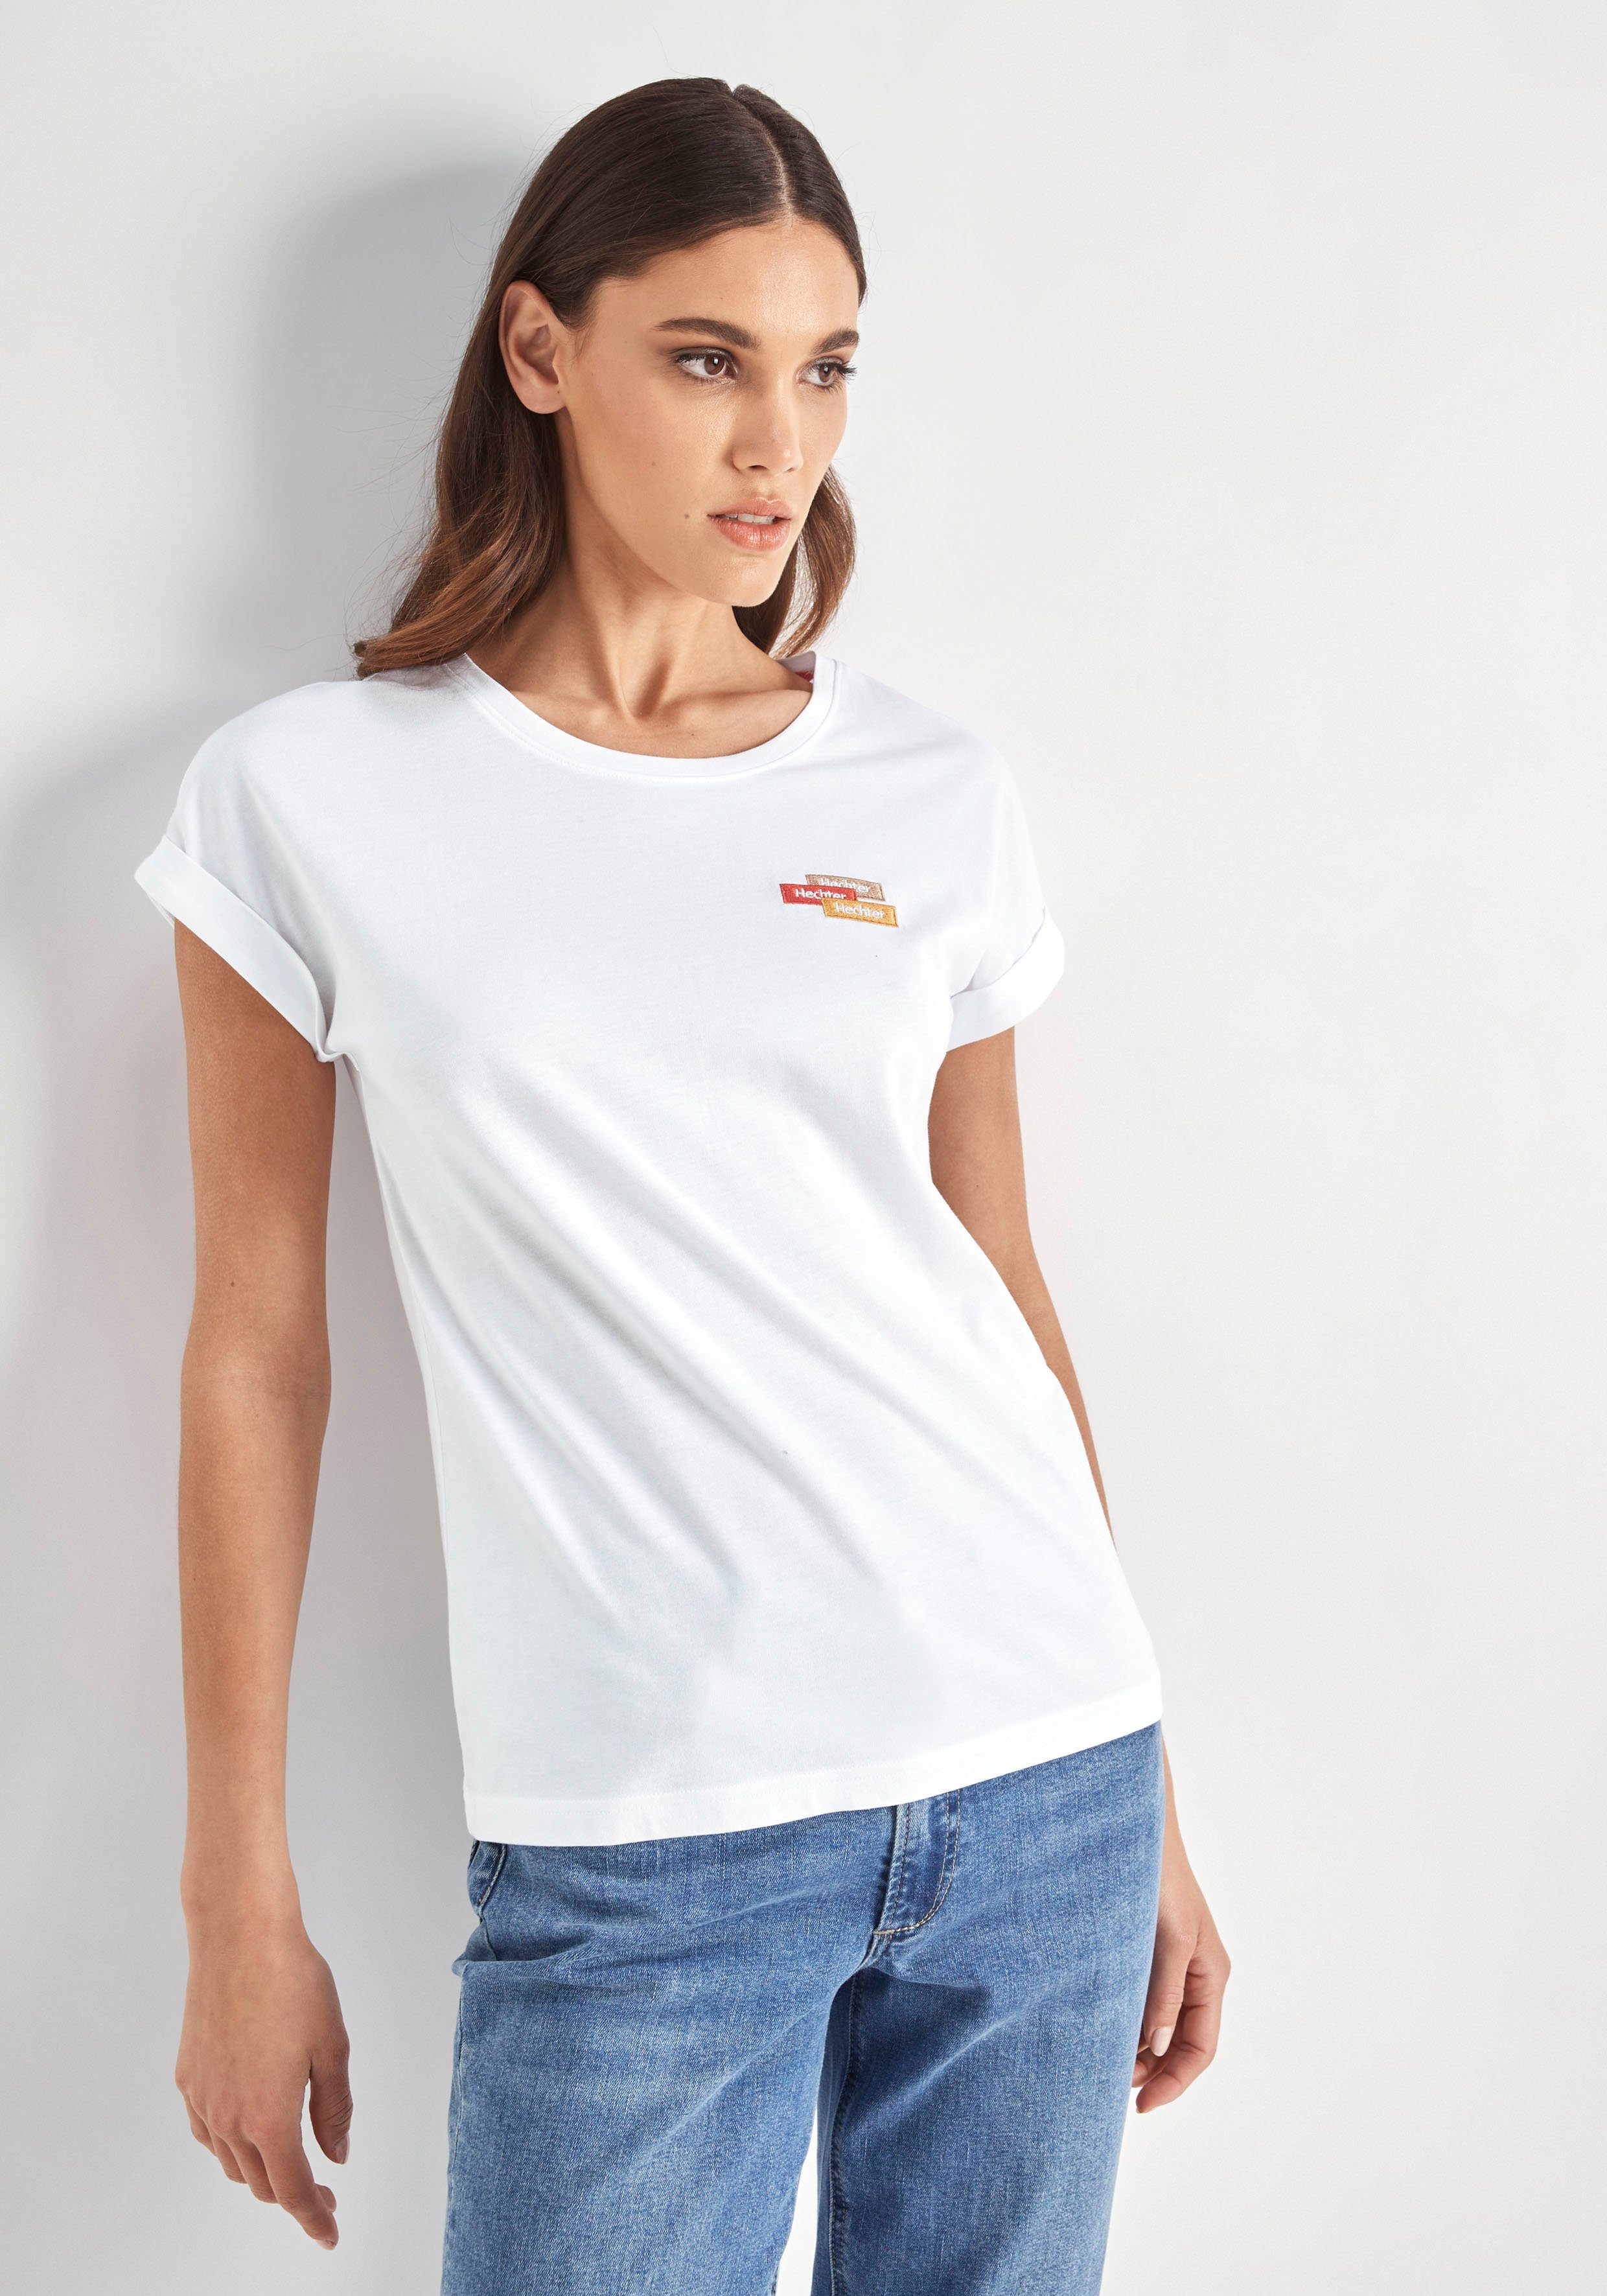 HECHTER PARIS T-Shirt mit Brust der Logostickerei dezenter auf